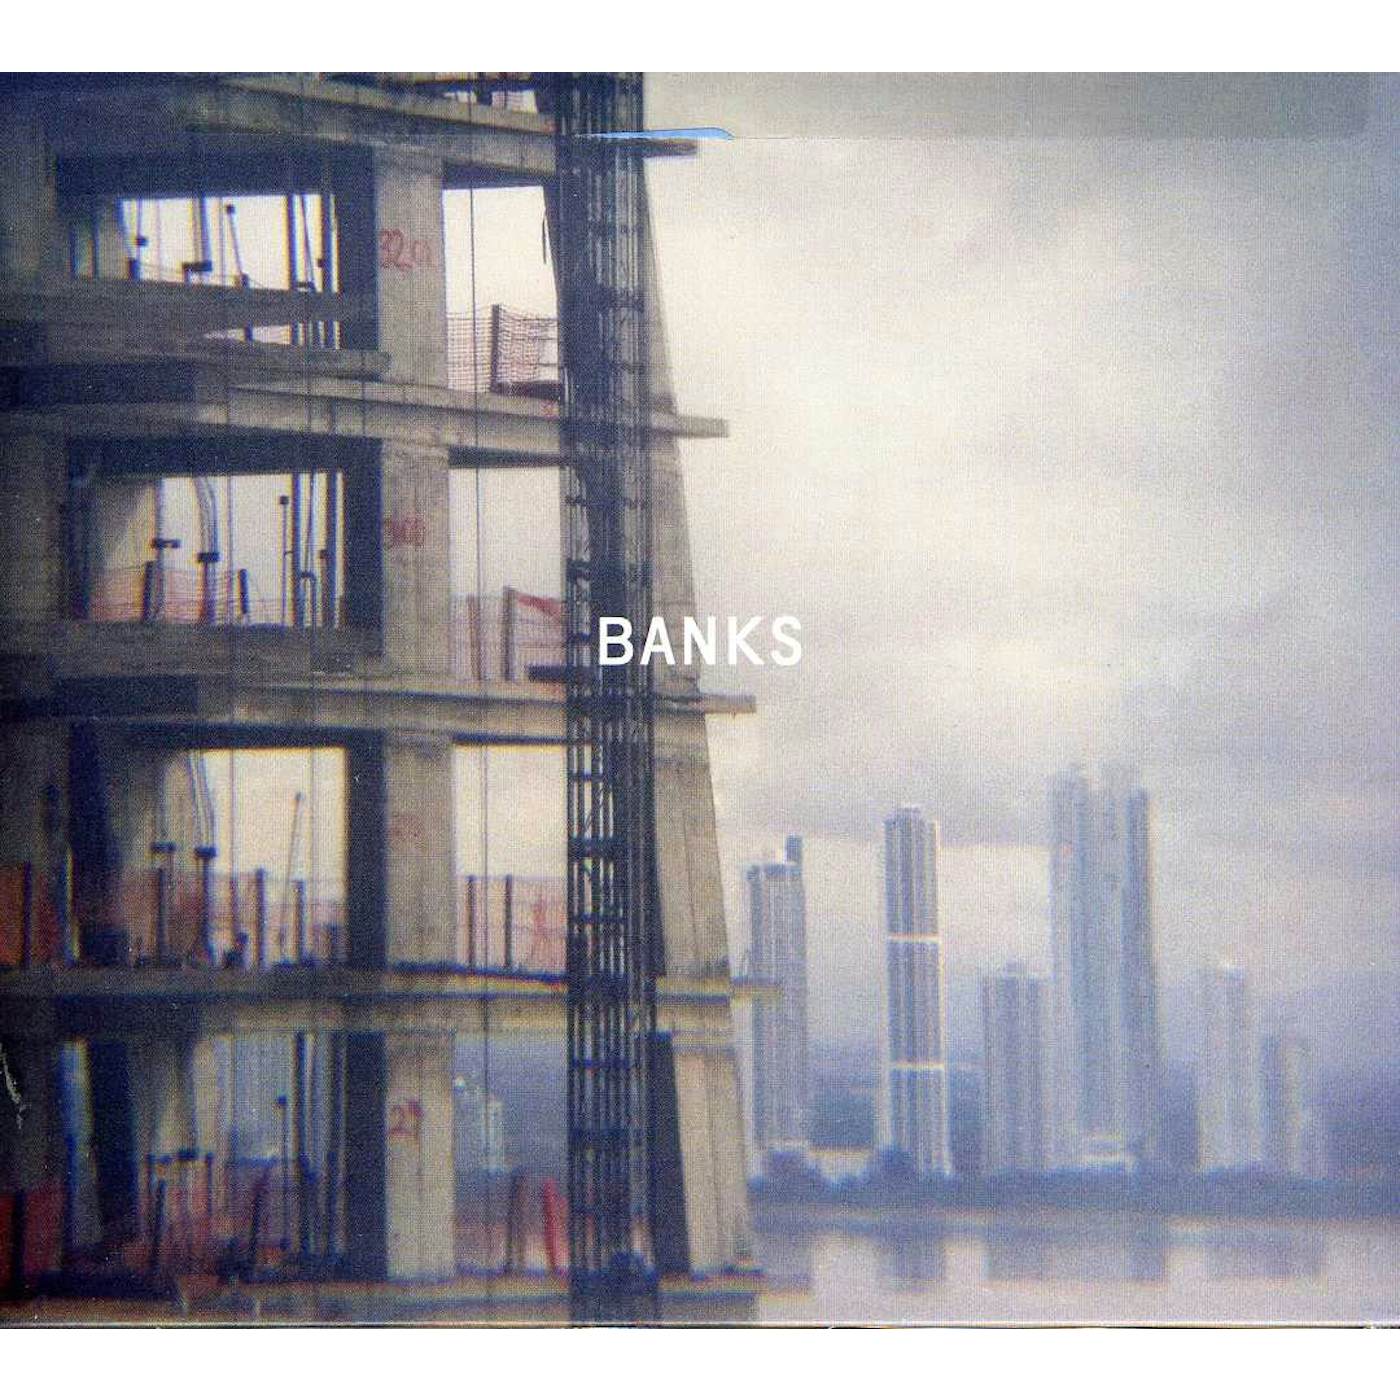 Paul Banks BANKS CD